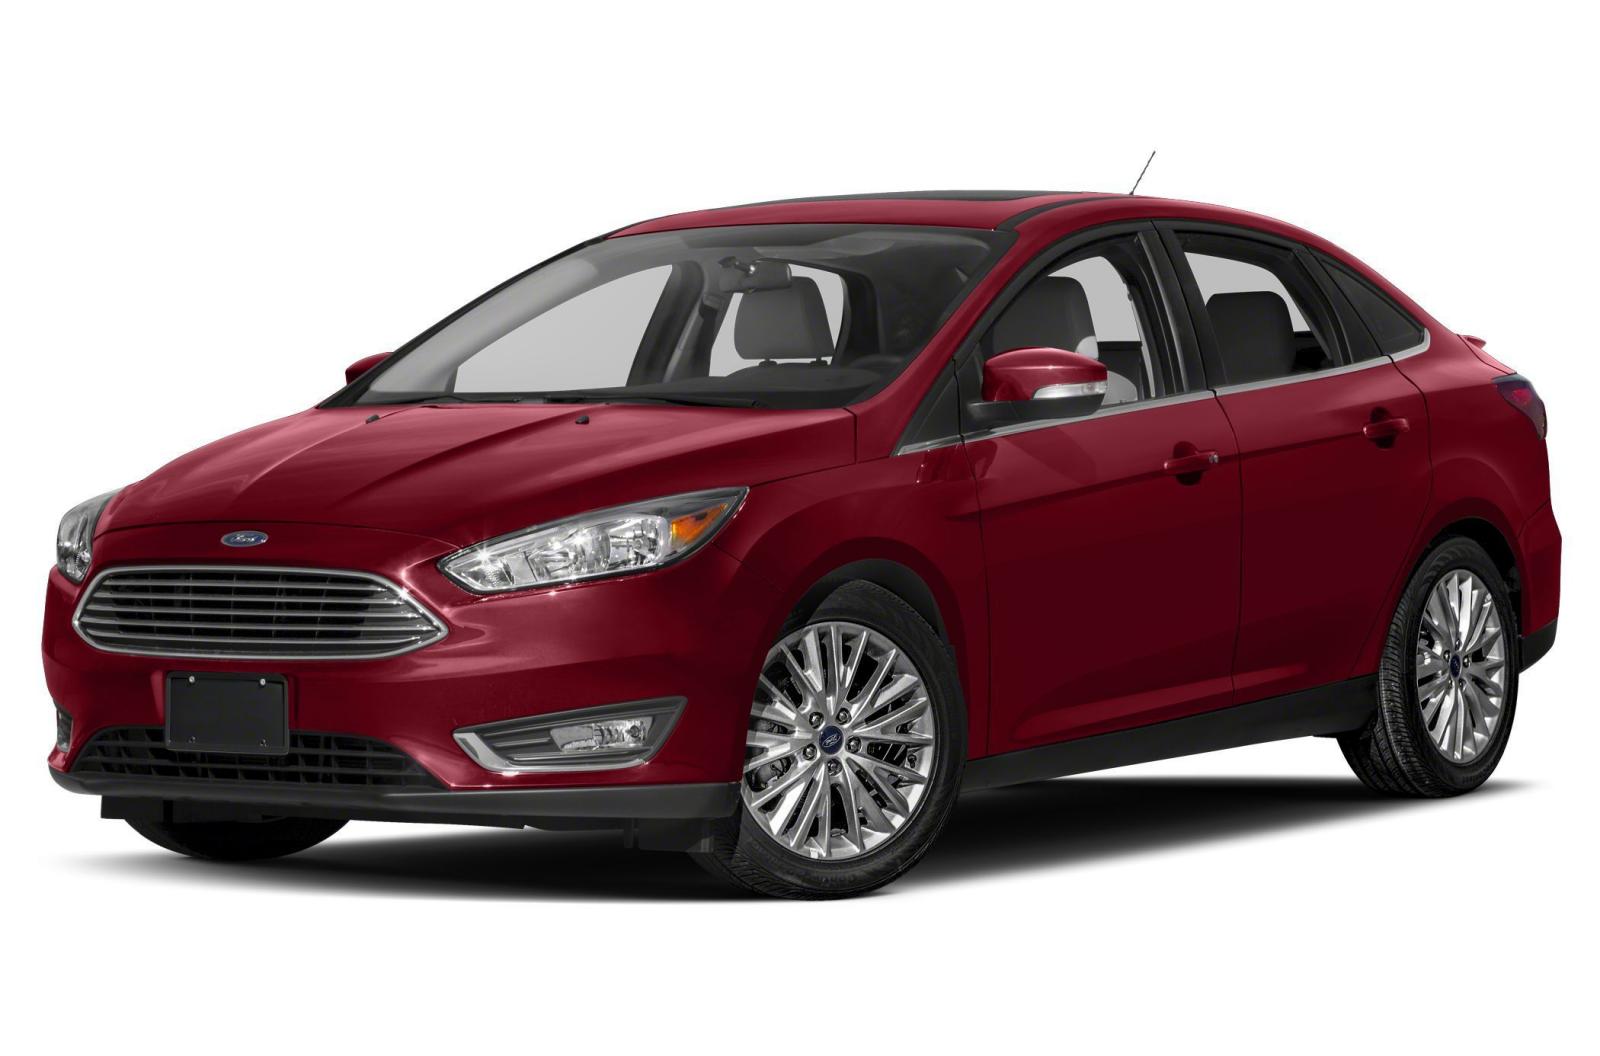 Ford Focus tiếp tục bị triệu hồi vì lỗi bình xăng